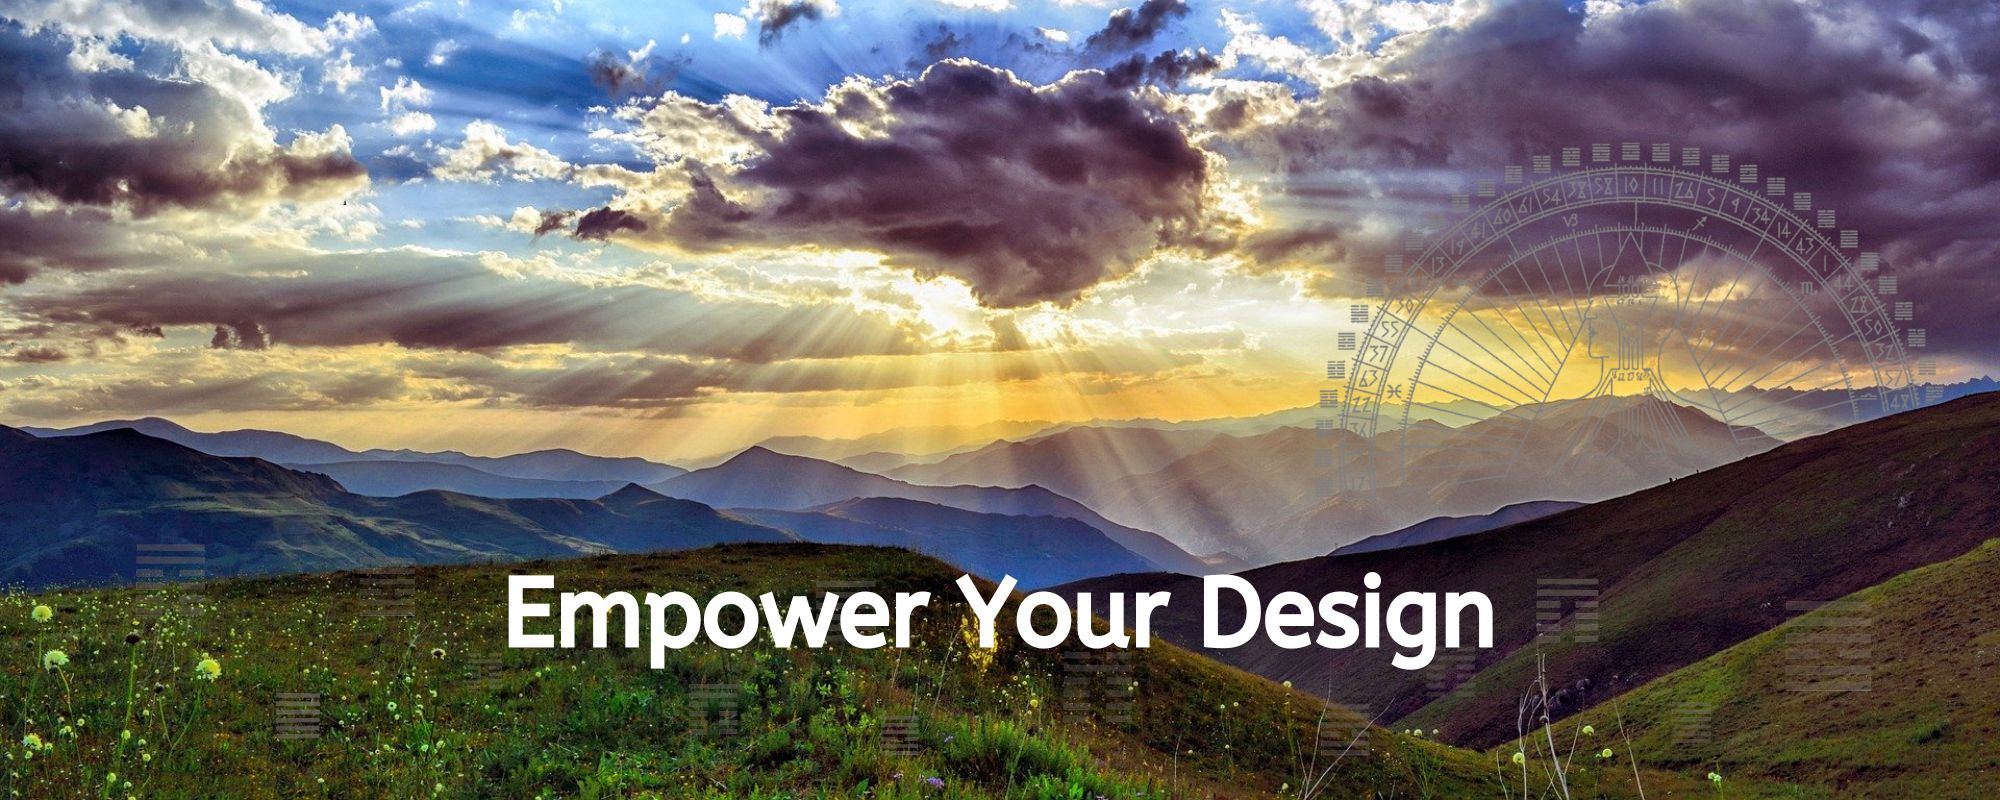 Empower Your Design